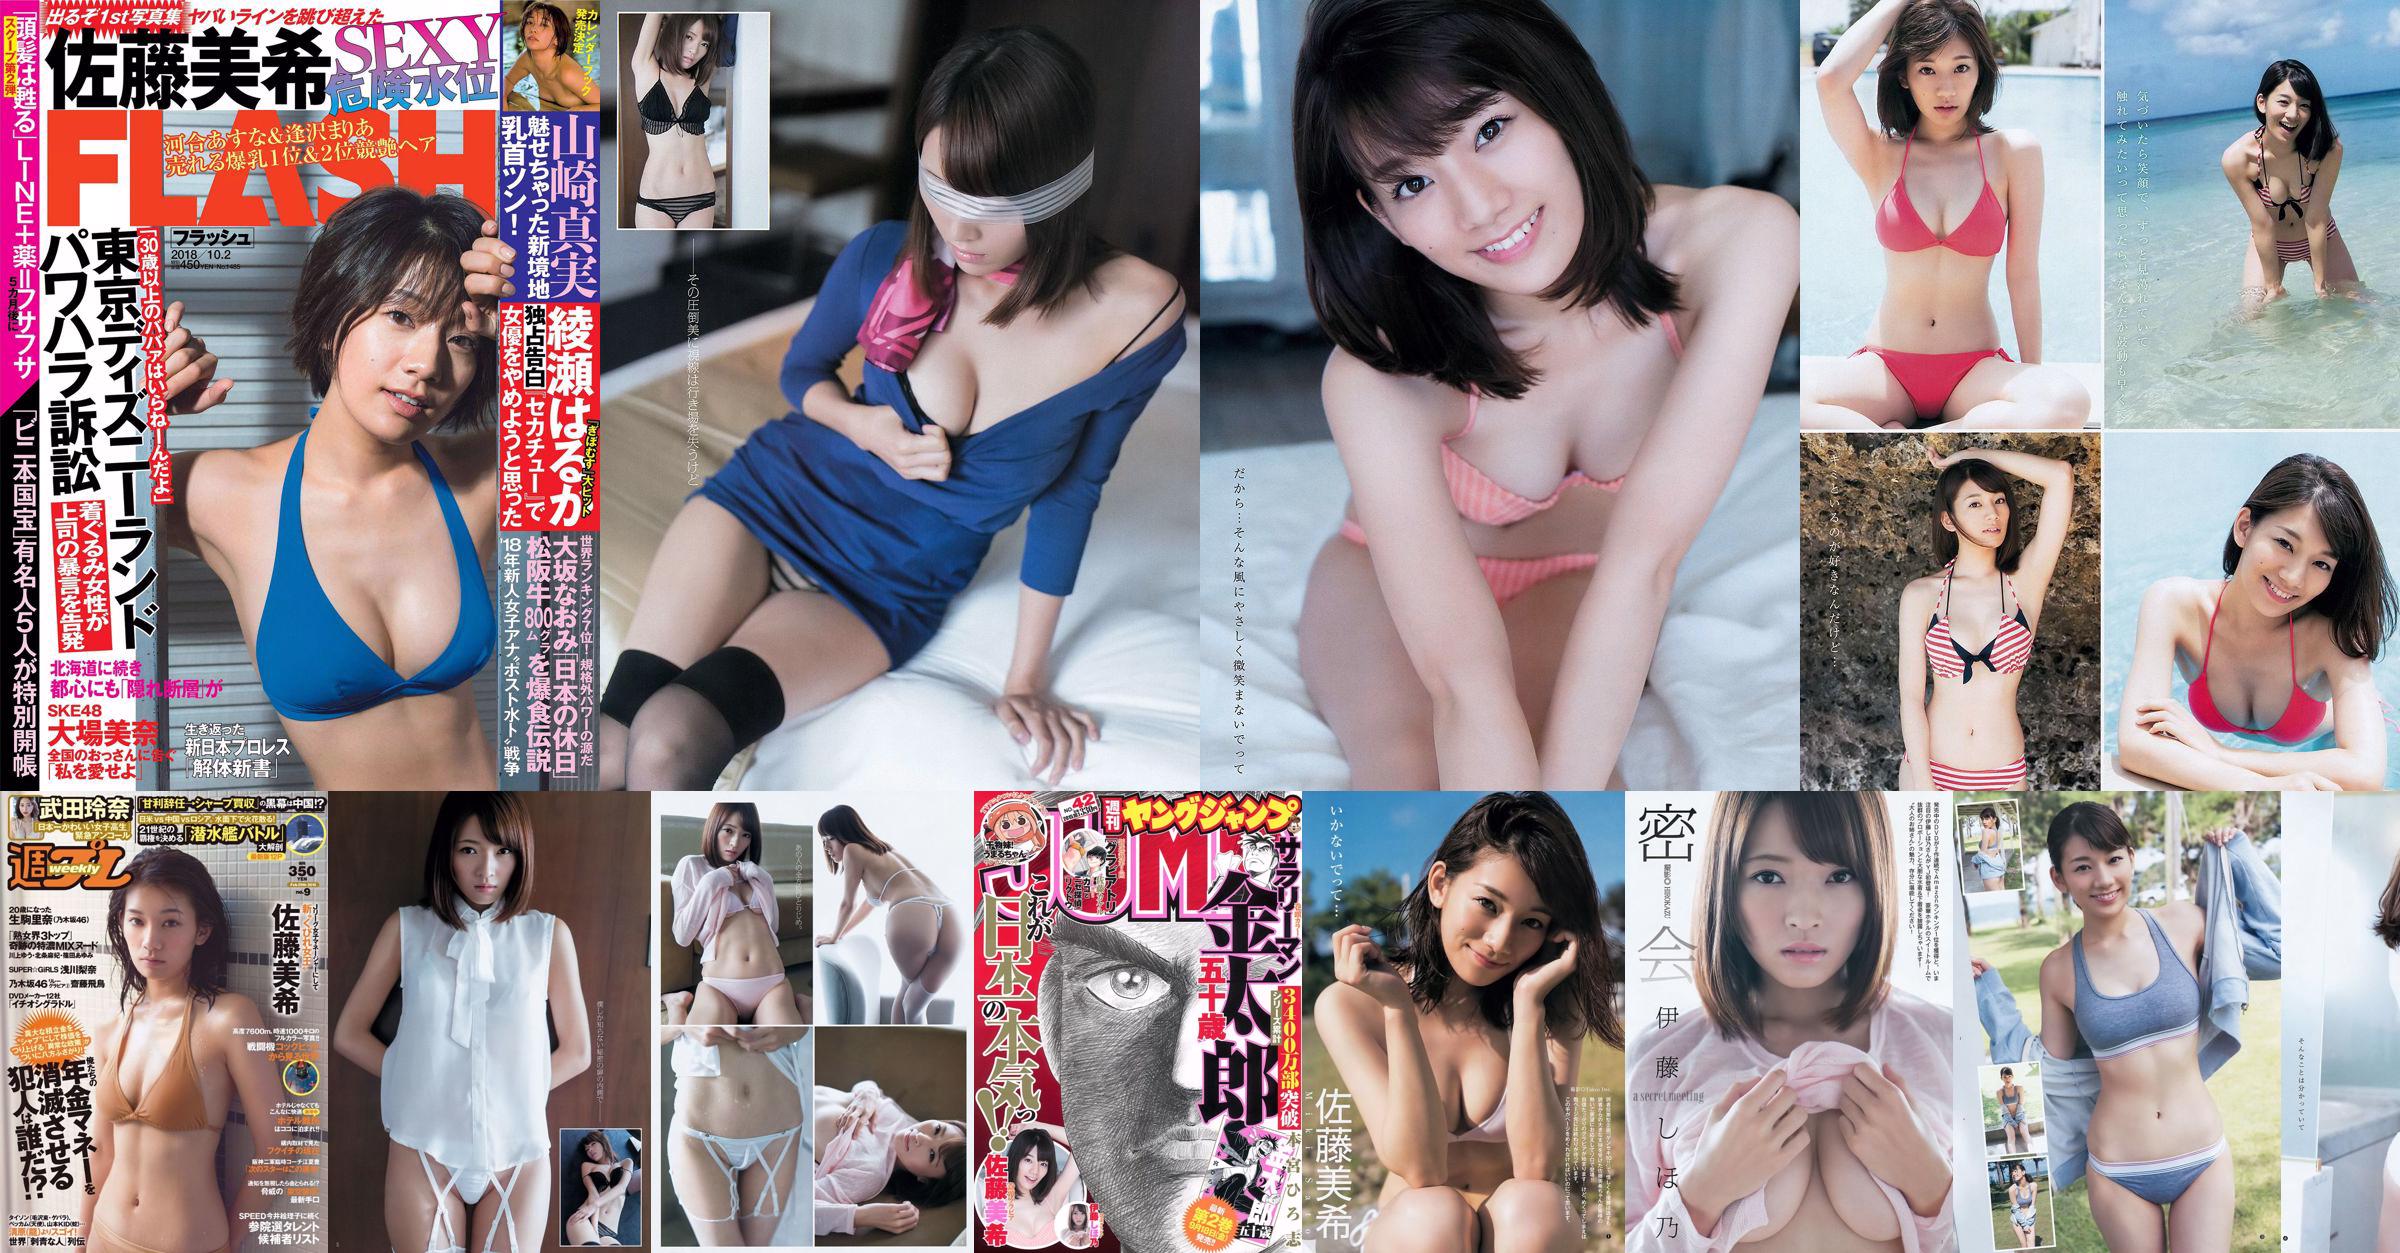 Miki Sato Rena Takeda Rina Ikoma Rina Asakawa Asuka Saito Masami Ichikawa [Playboy Semanal] 2016 No.09 Fotografia No.096825 Página 1